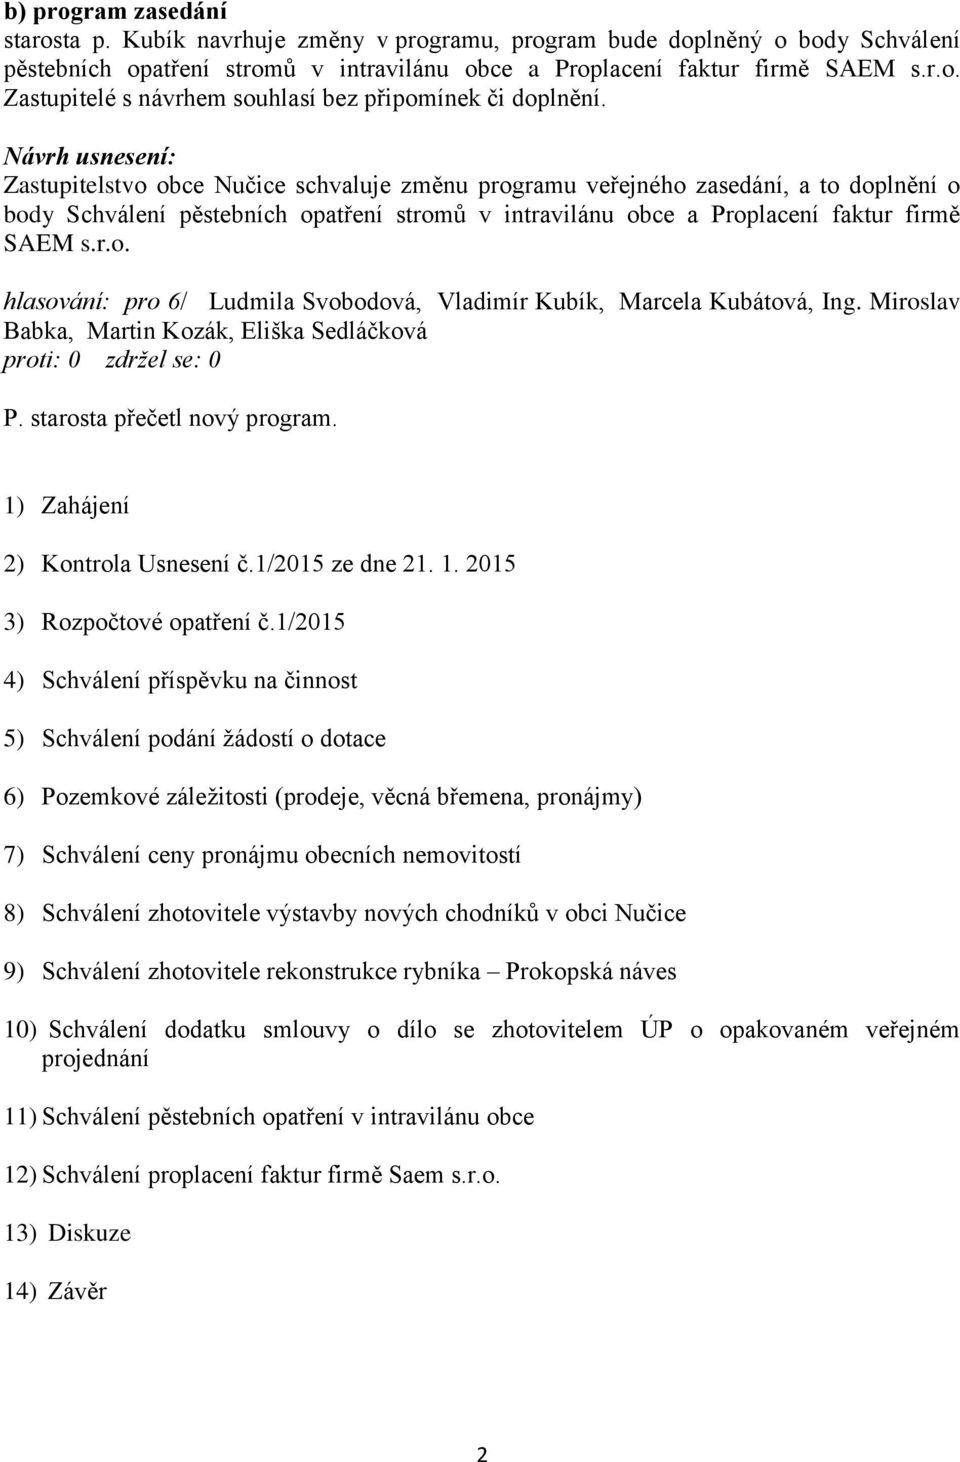 1) Zahájení 2) Kontrola Usnesení č.1/2015 ze dne 21. 1. 2015 3) Rozpočtové opatření č.